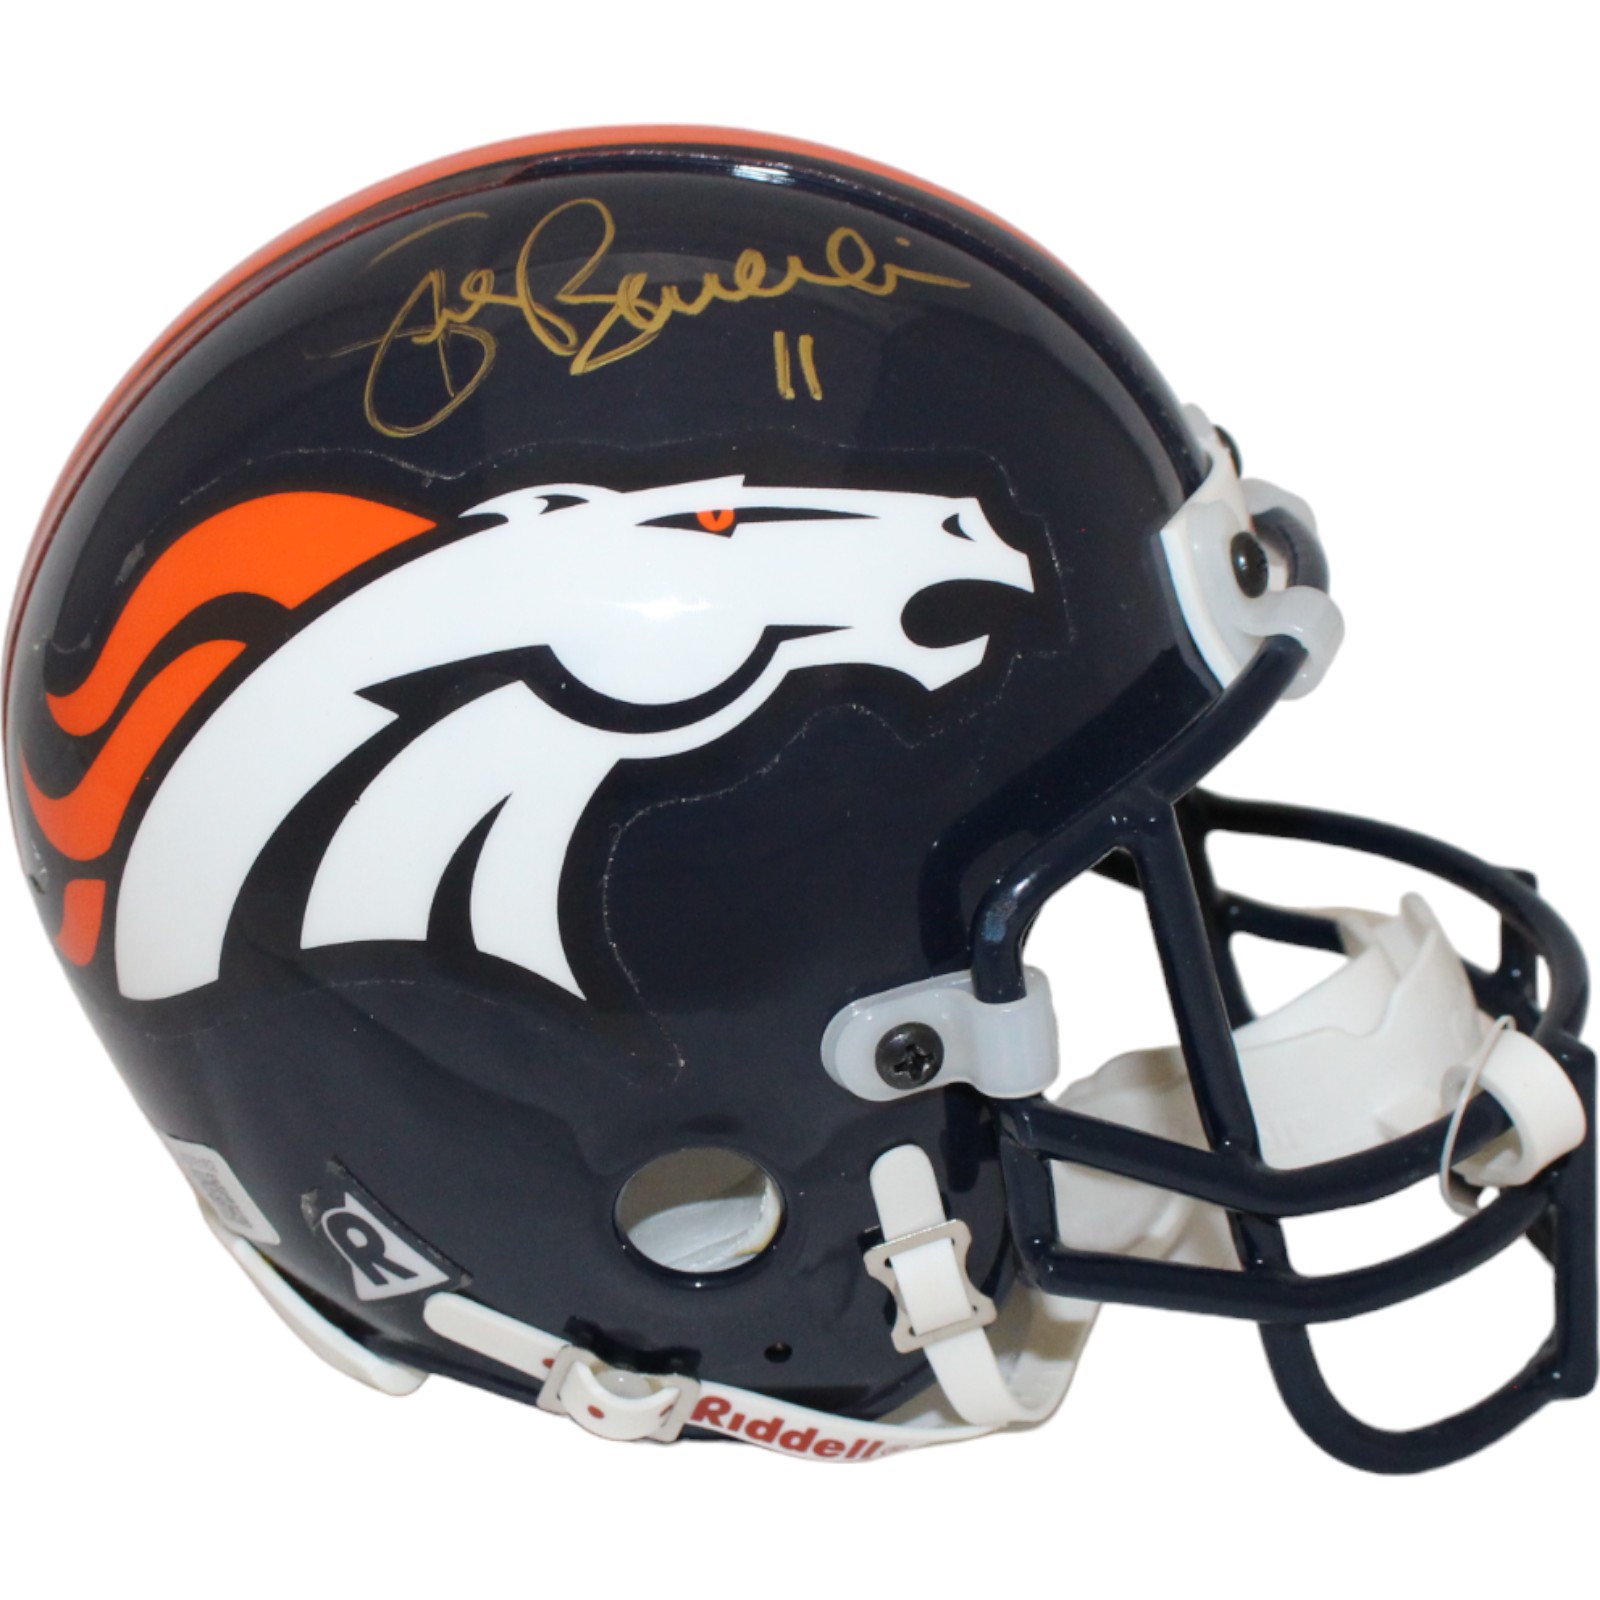 Steve Beuerlein Signed Denver Broncos VSR4 Authentic Mini Helmet BAS 44130